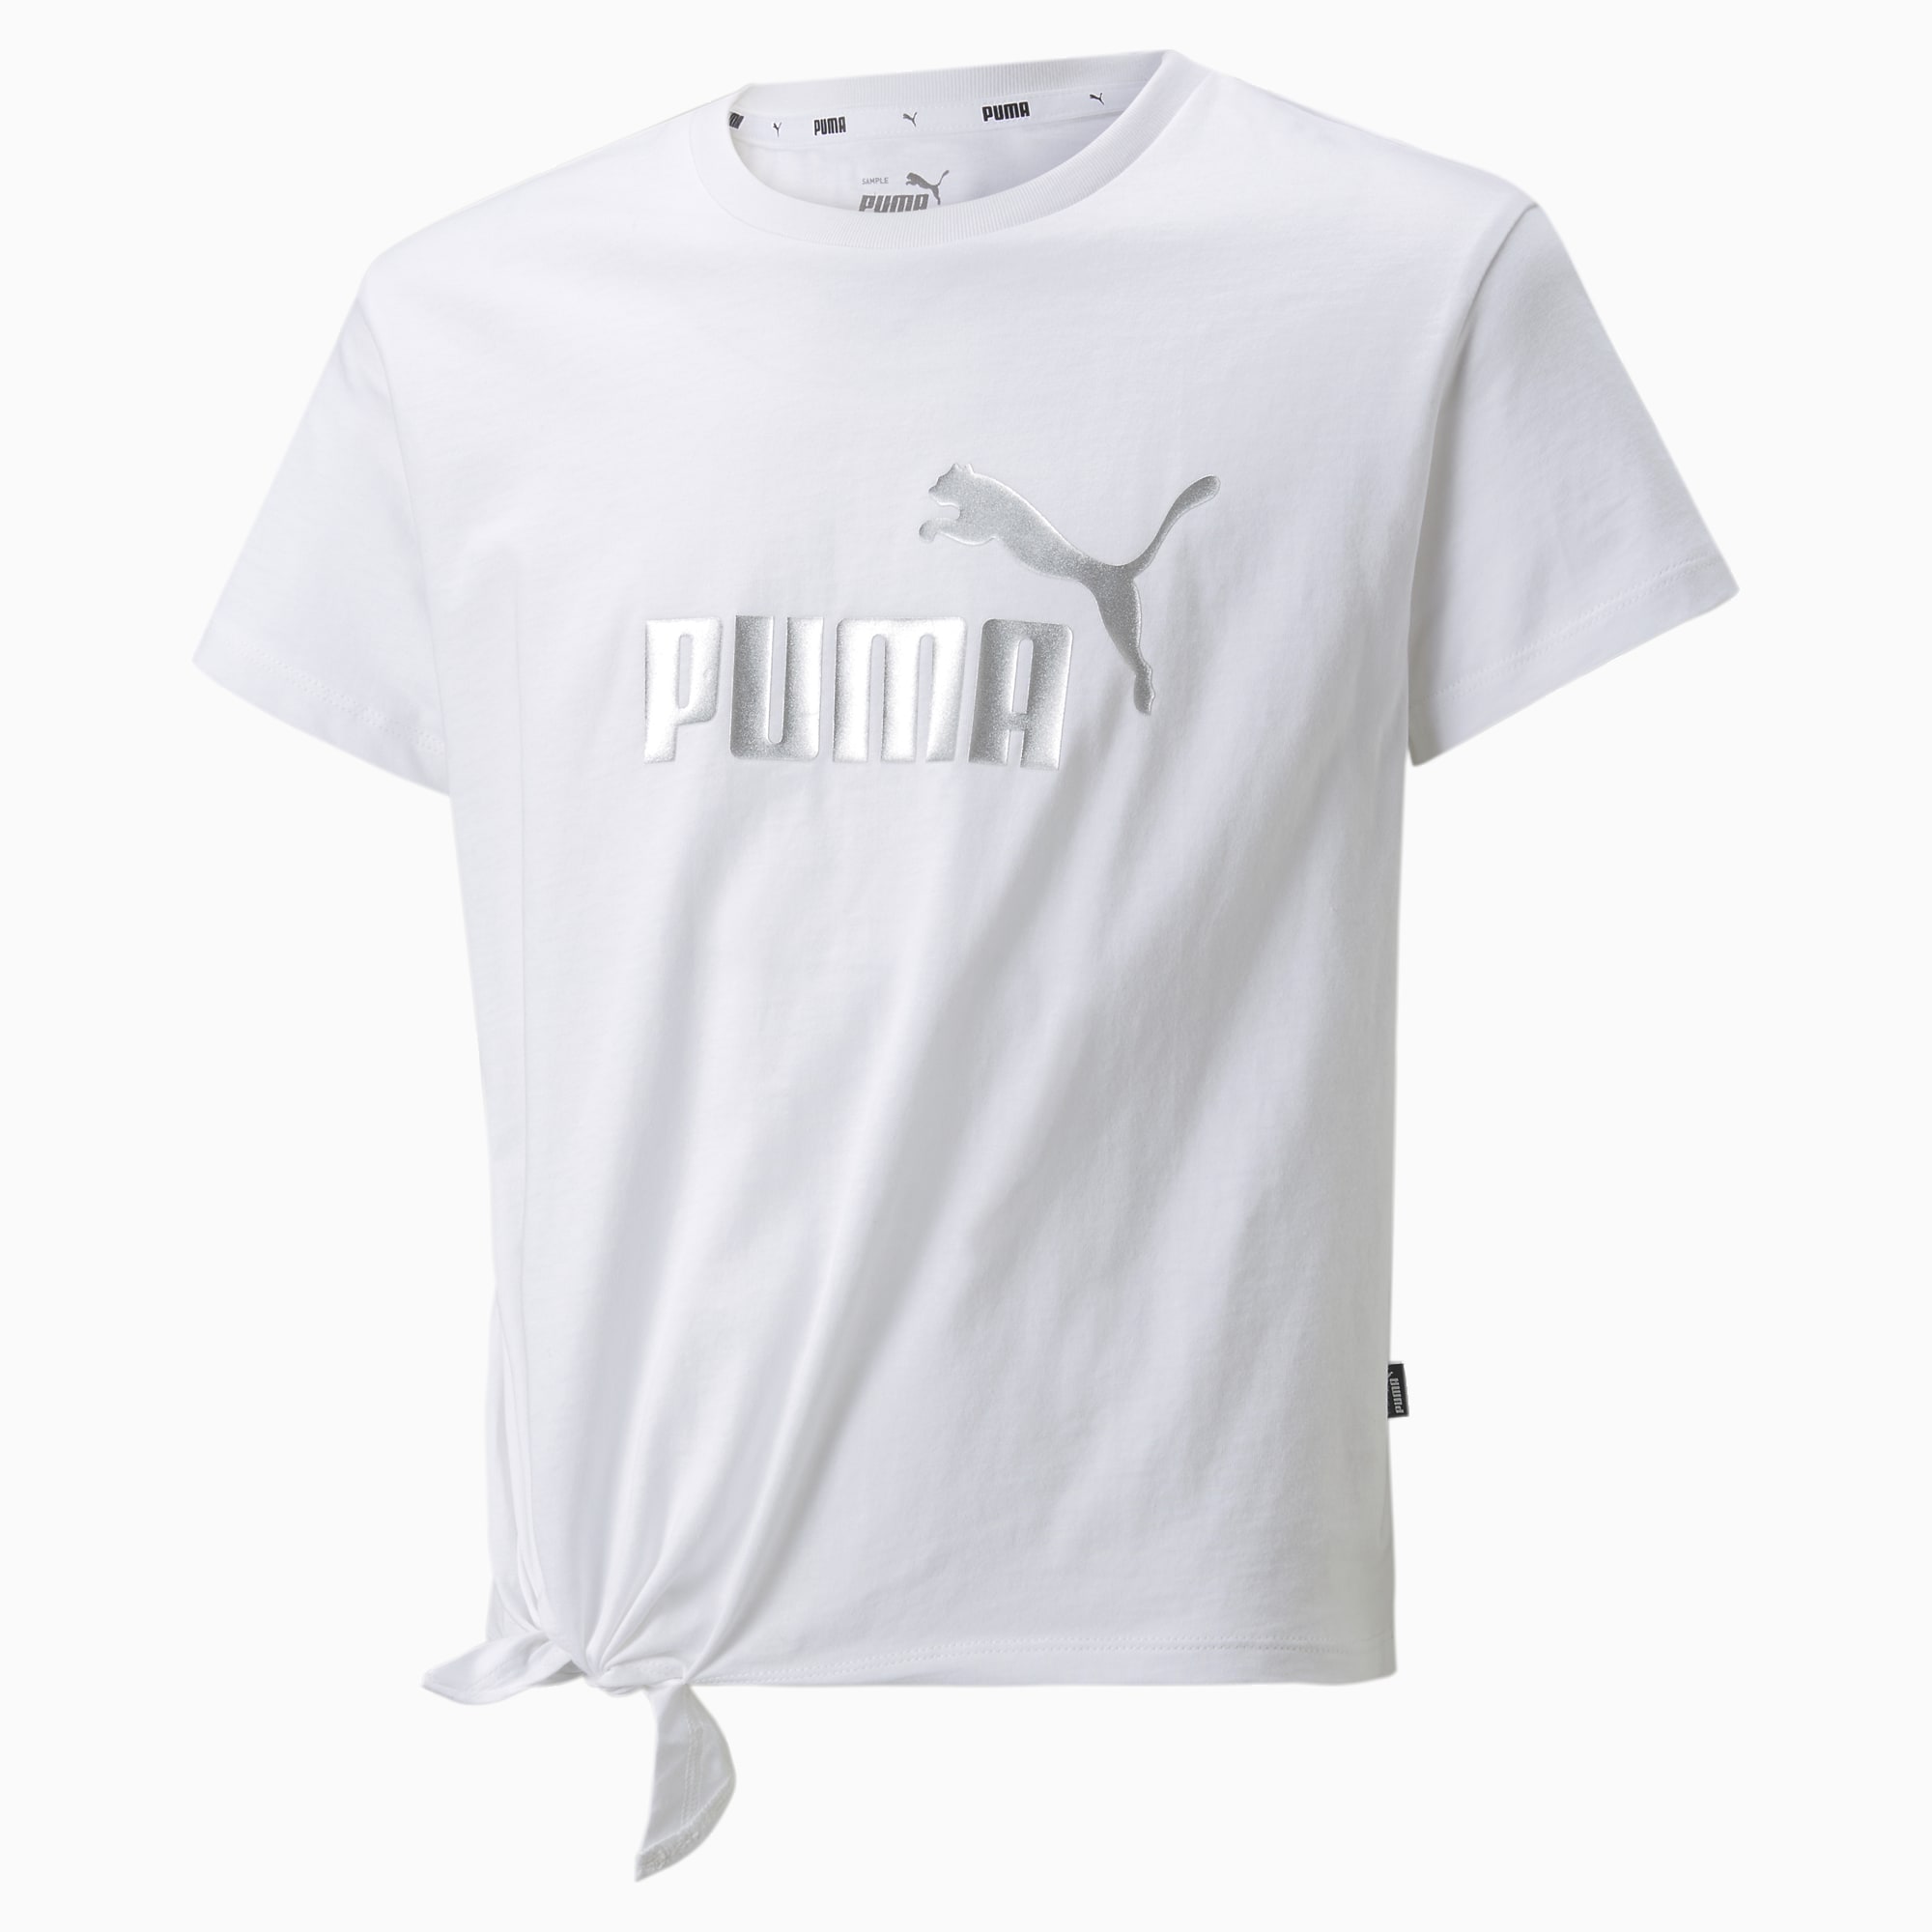 Camiseta Puma Essential 846953-56